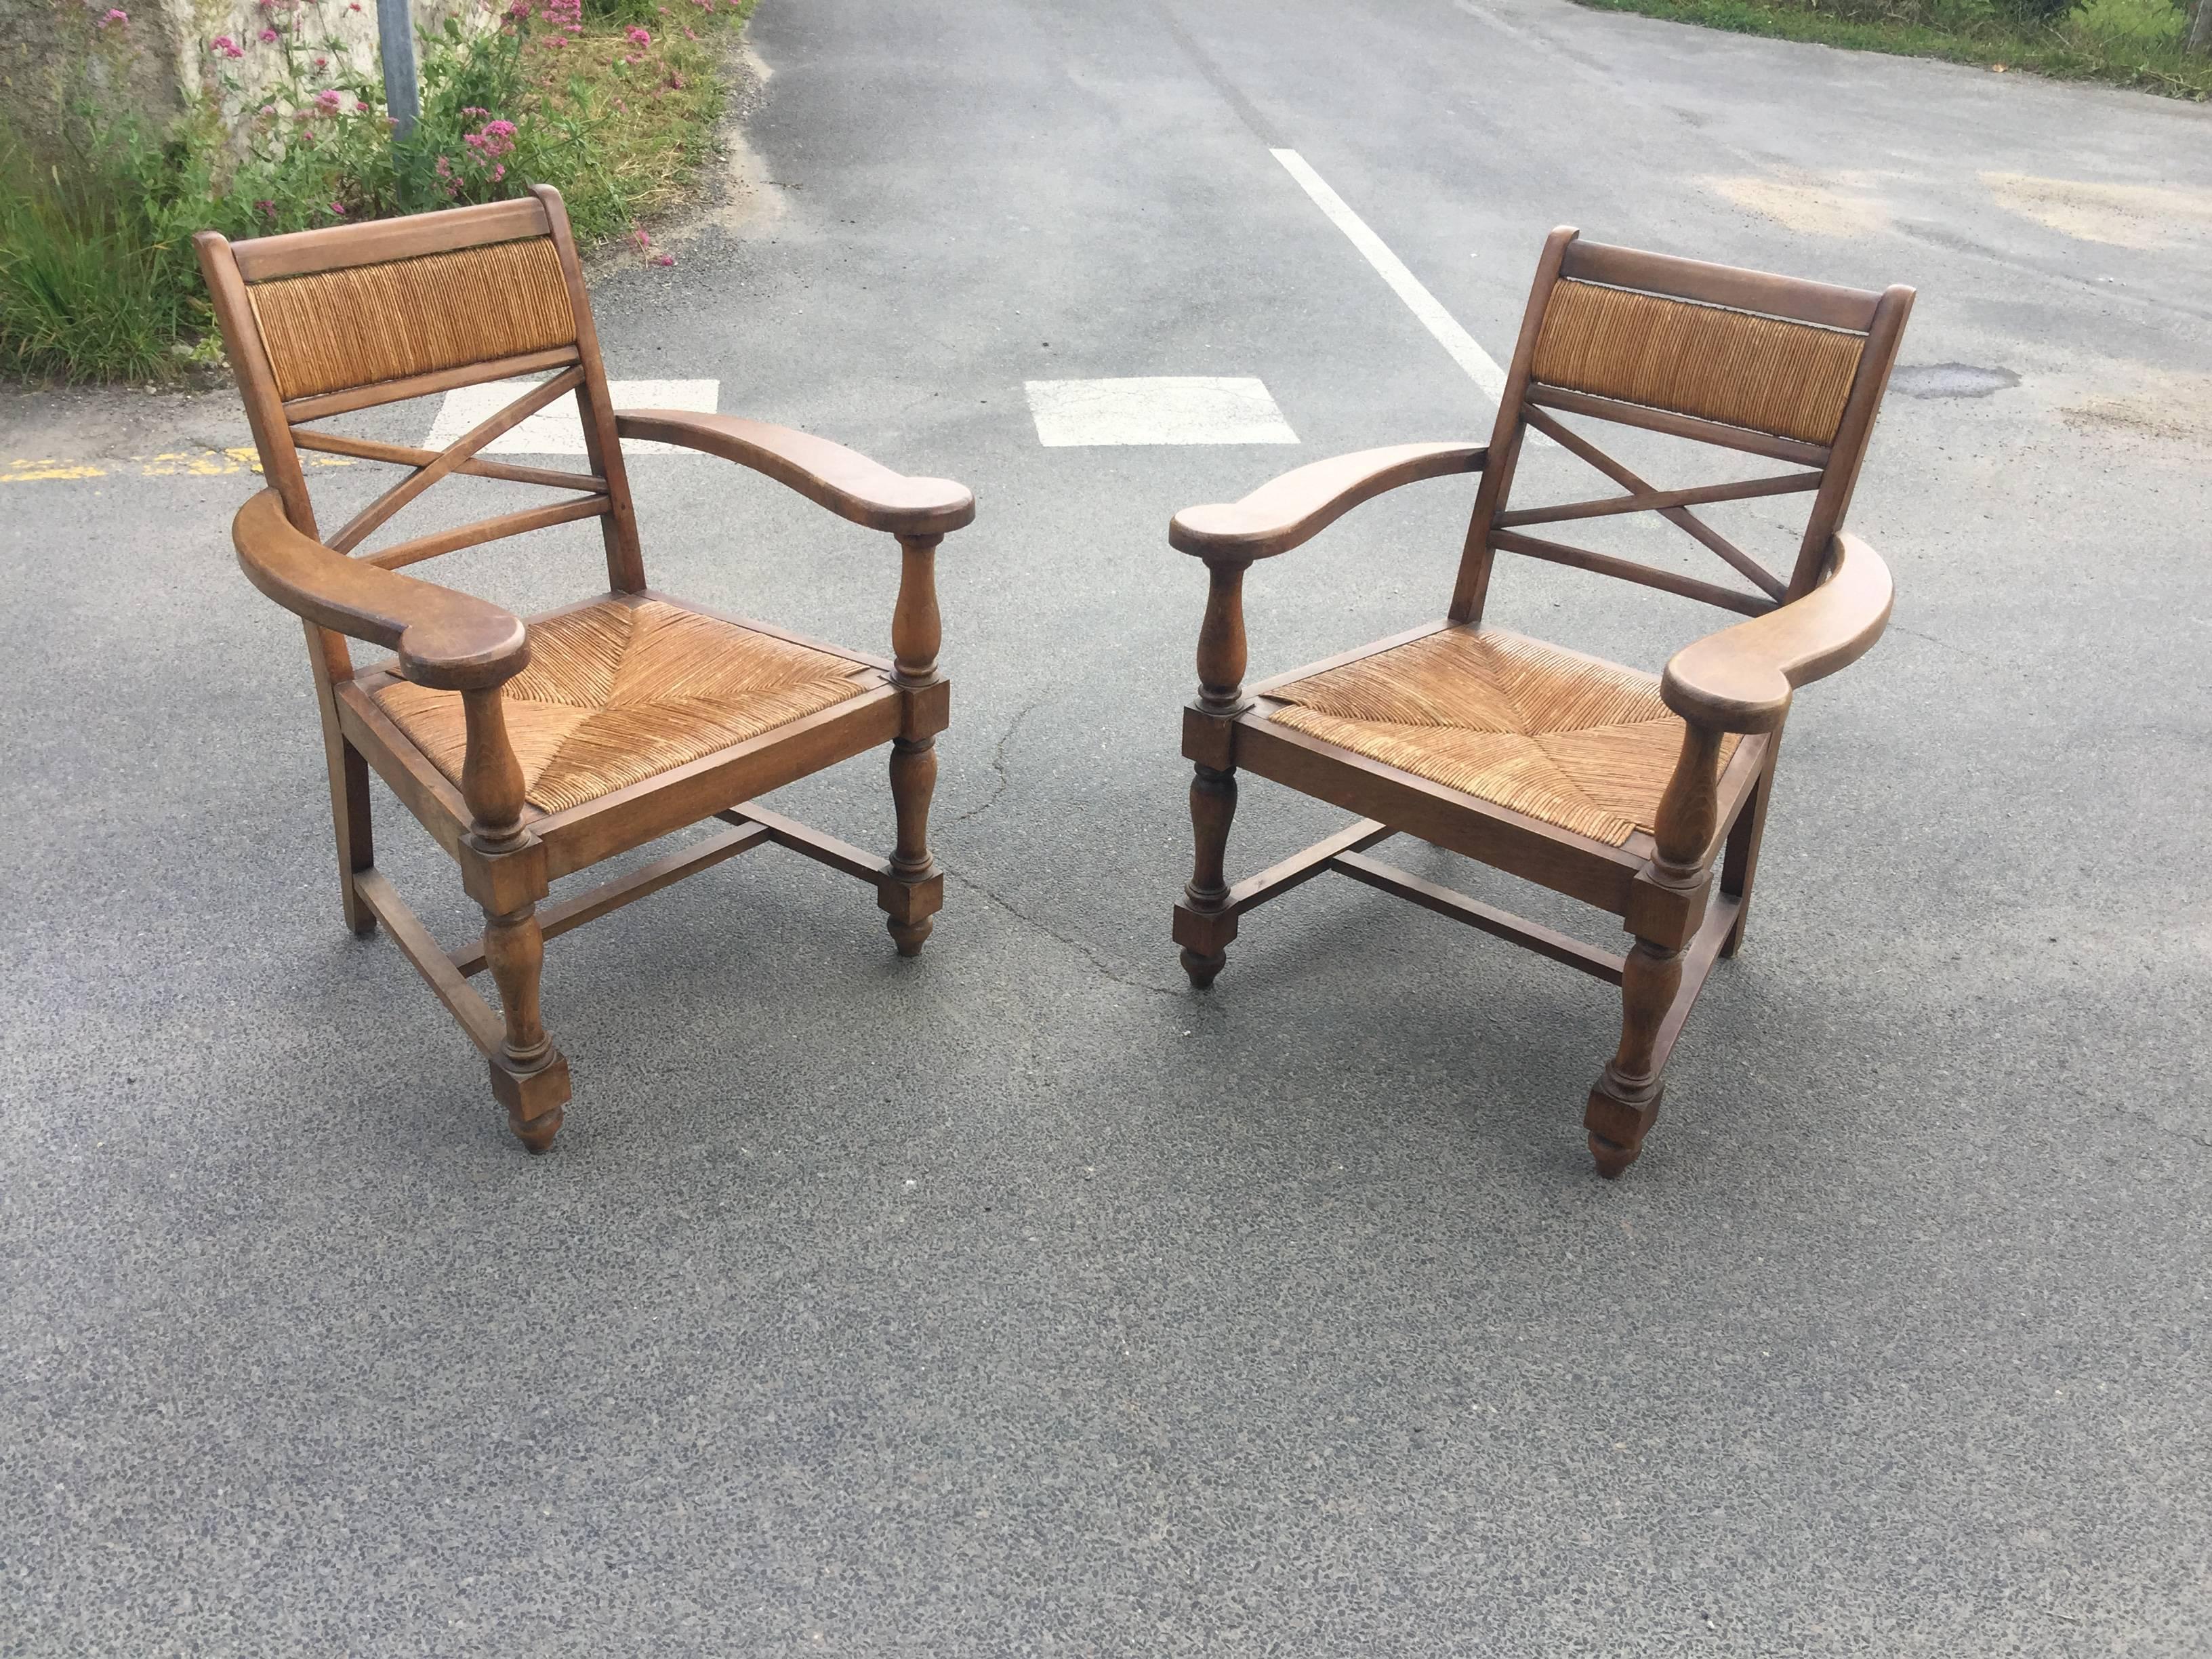 Ein Paar neoklassizistische Sessel im Stil von André Arbus, um 1940.
Guter Zustand, ein paar Mängel im Stroh sitzen.